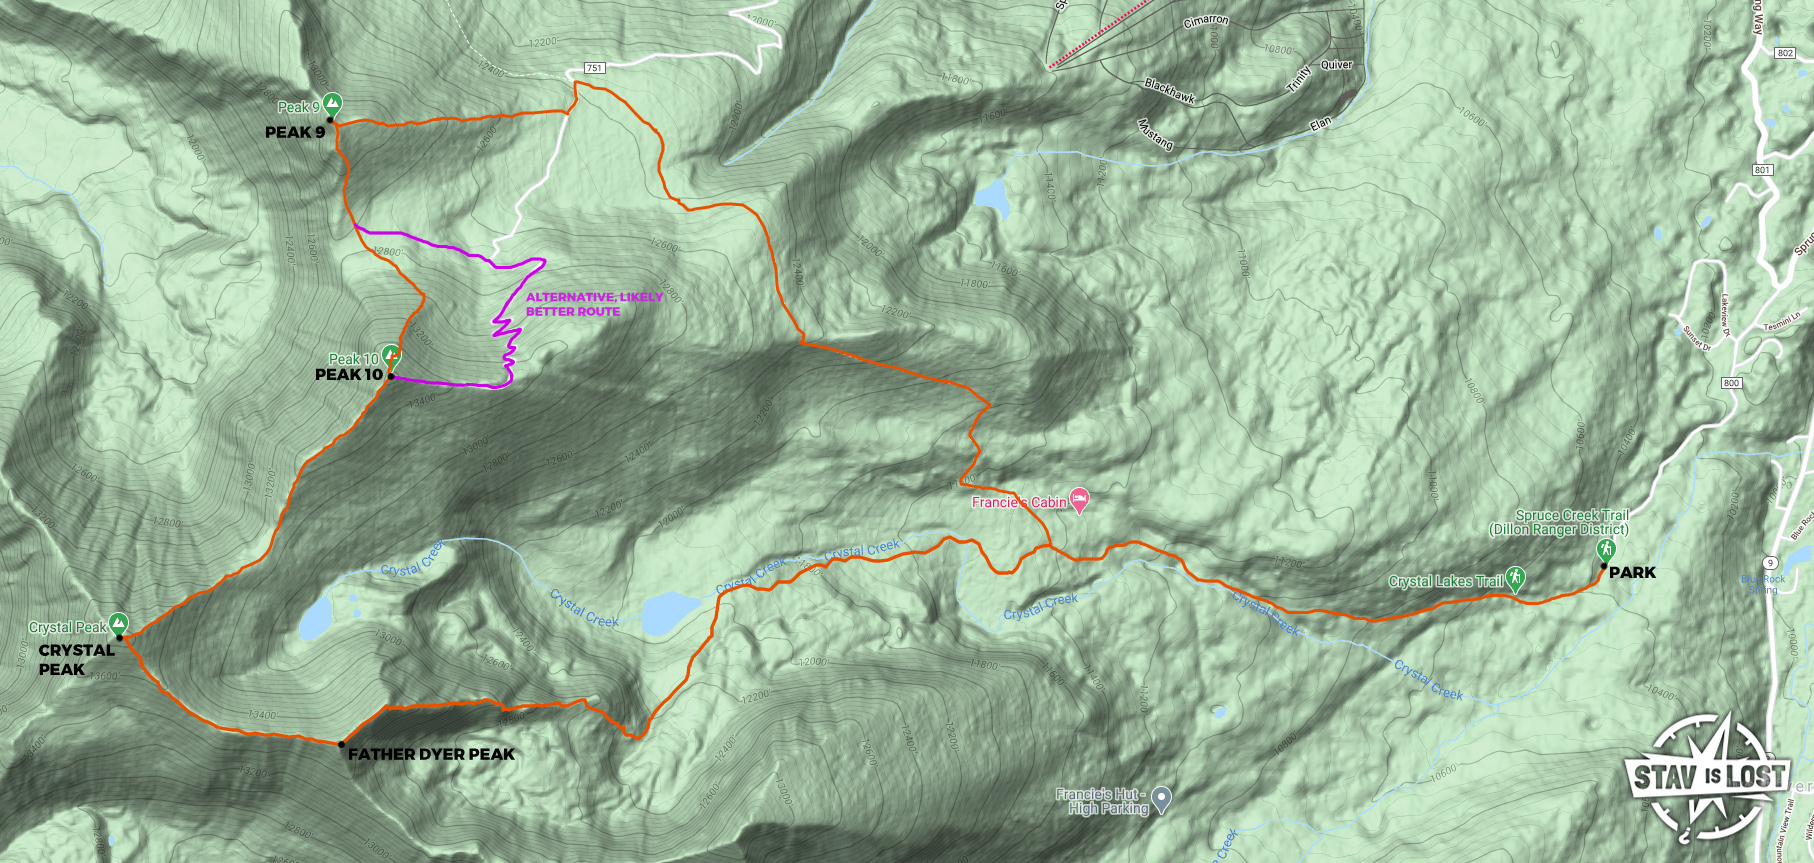 map for Father Dyer Peak, Crystal Peak, Peak 10, Peak 9 by stav is lost